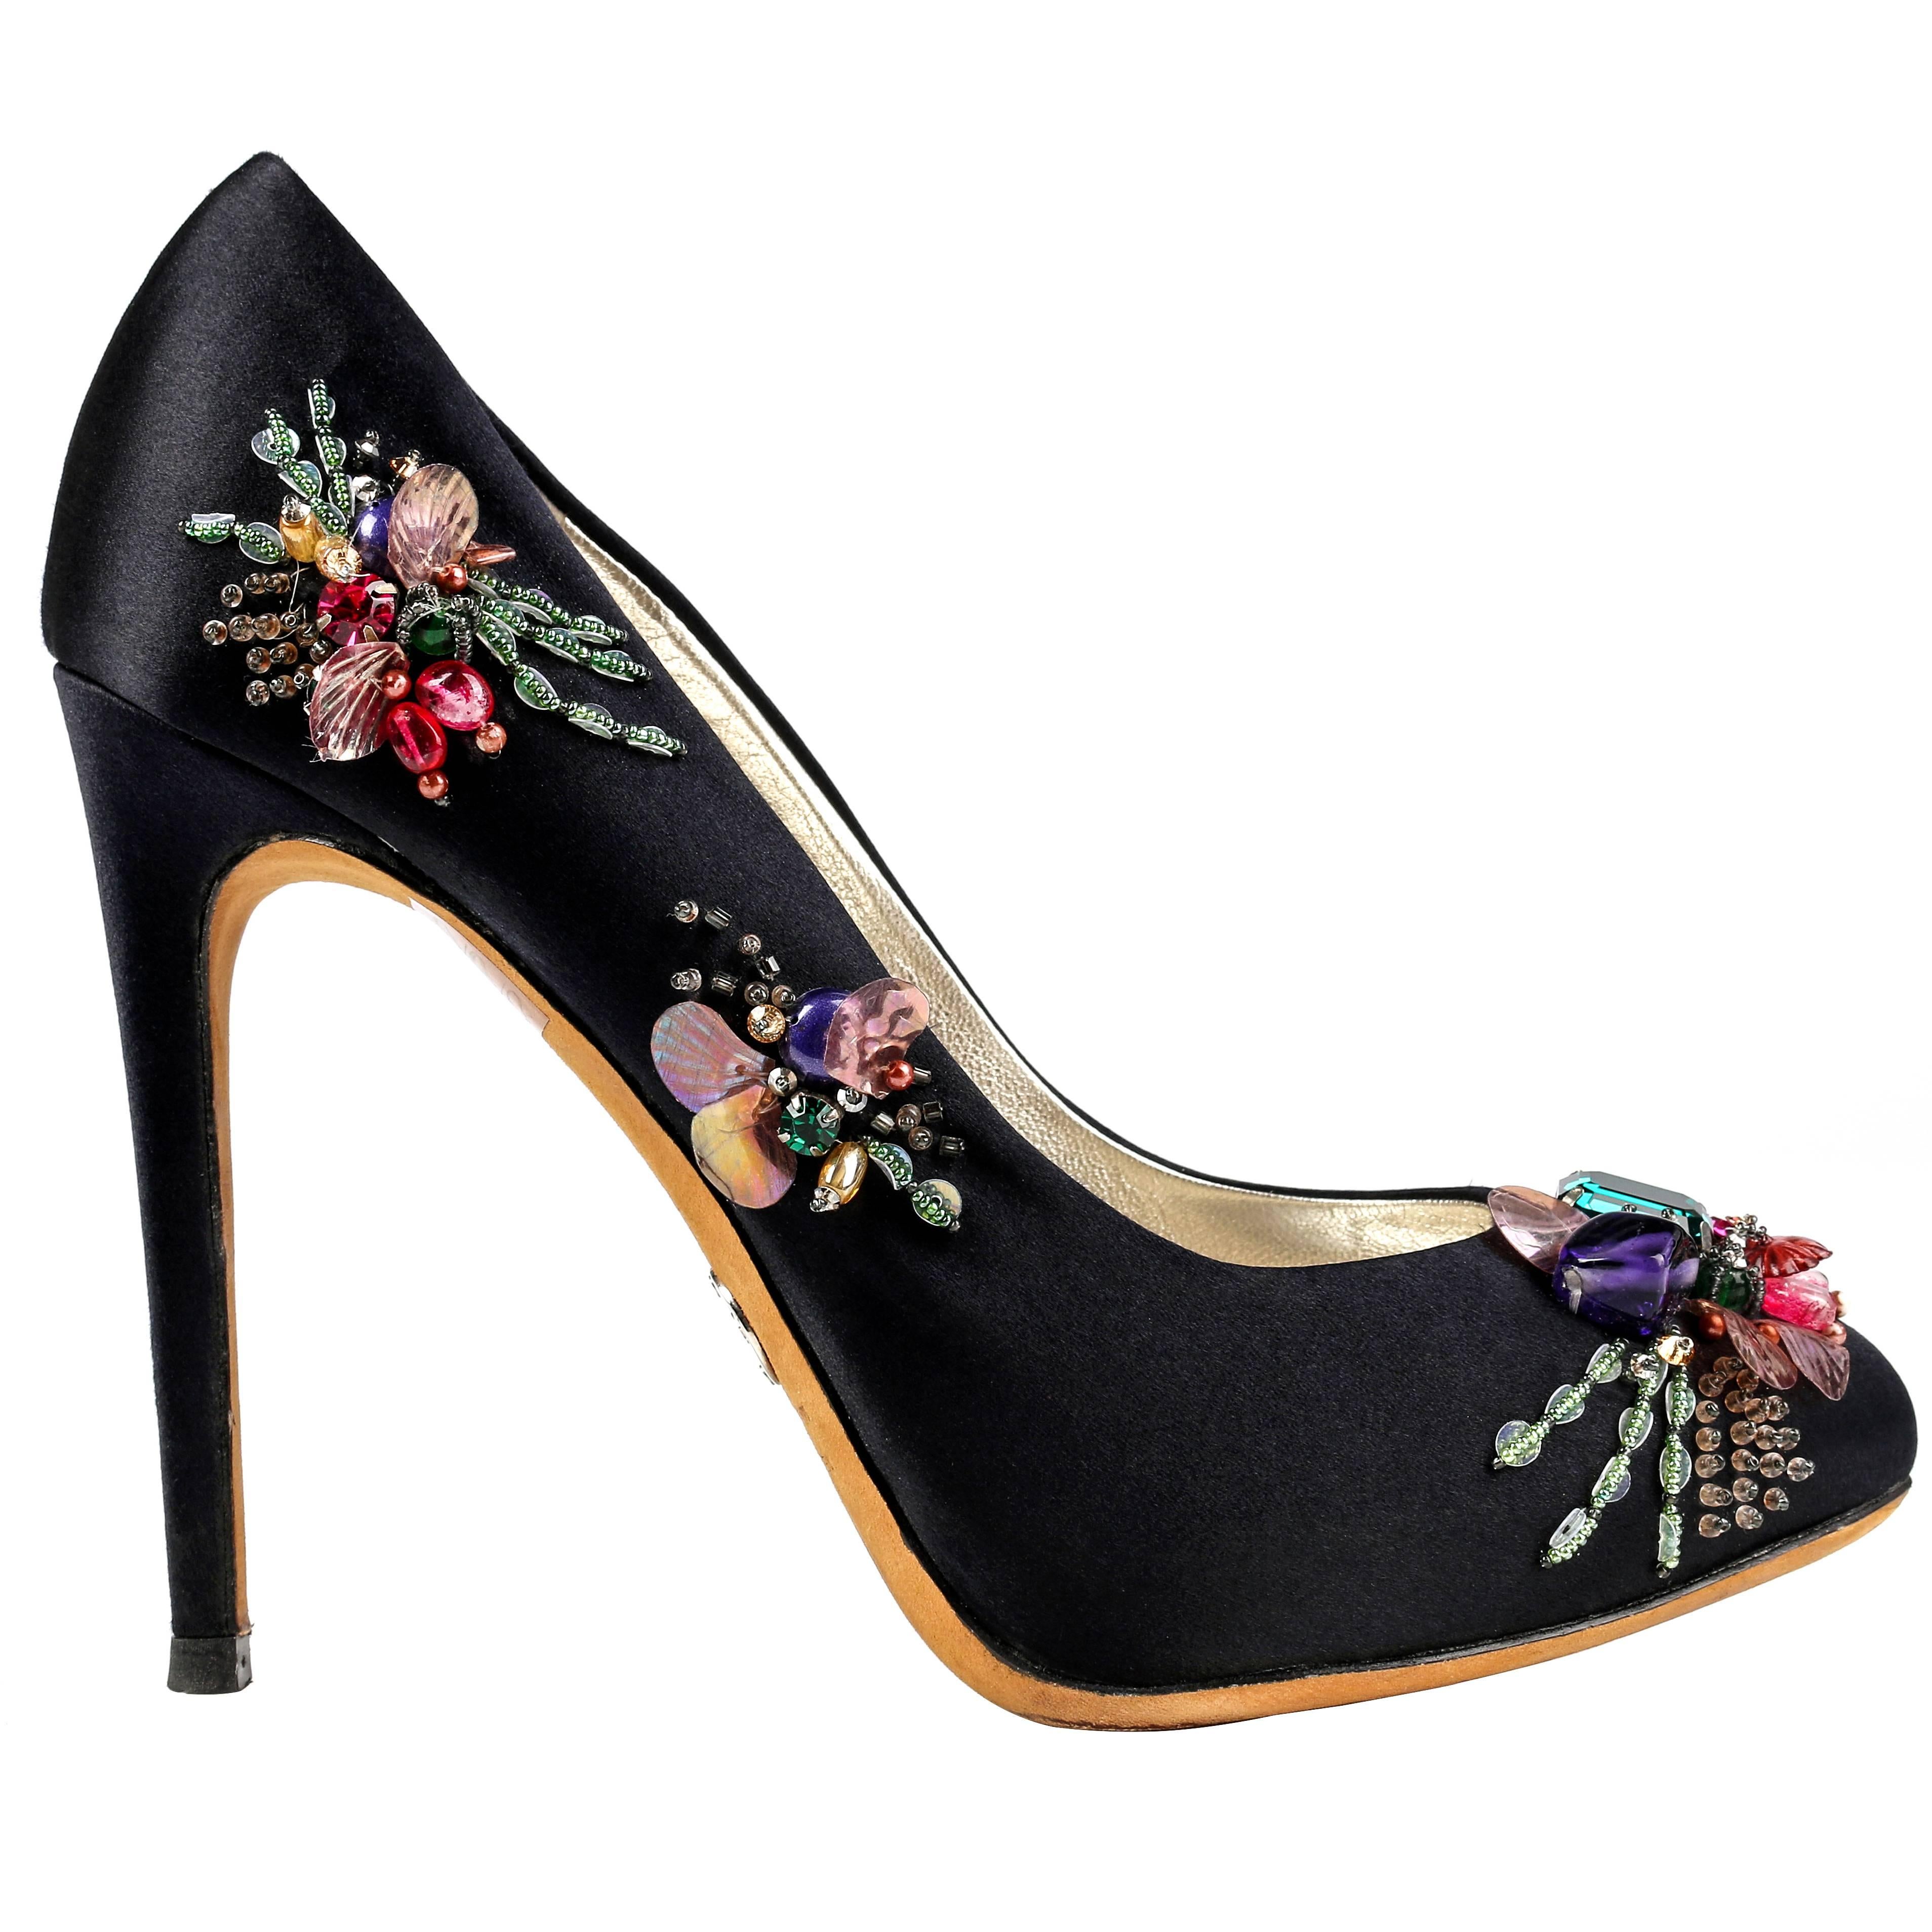 DOLCE & GABBANA Black Satin Beaded Embellished Platform Pumps Heels Shoes 37.5